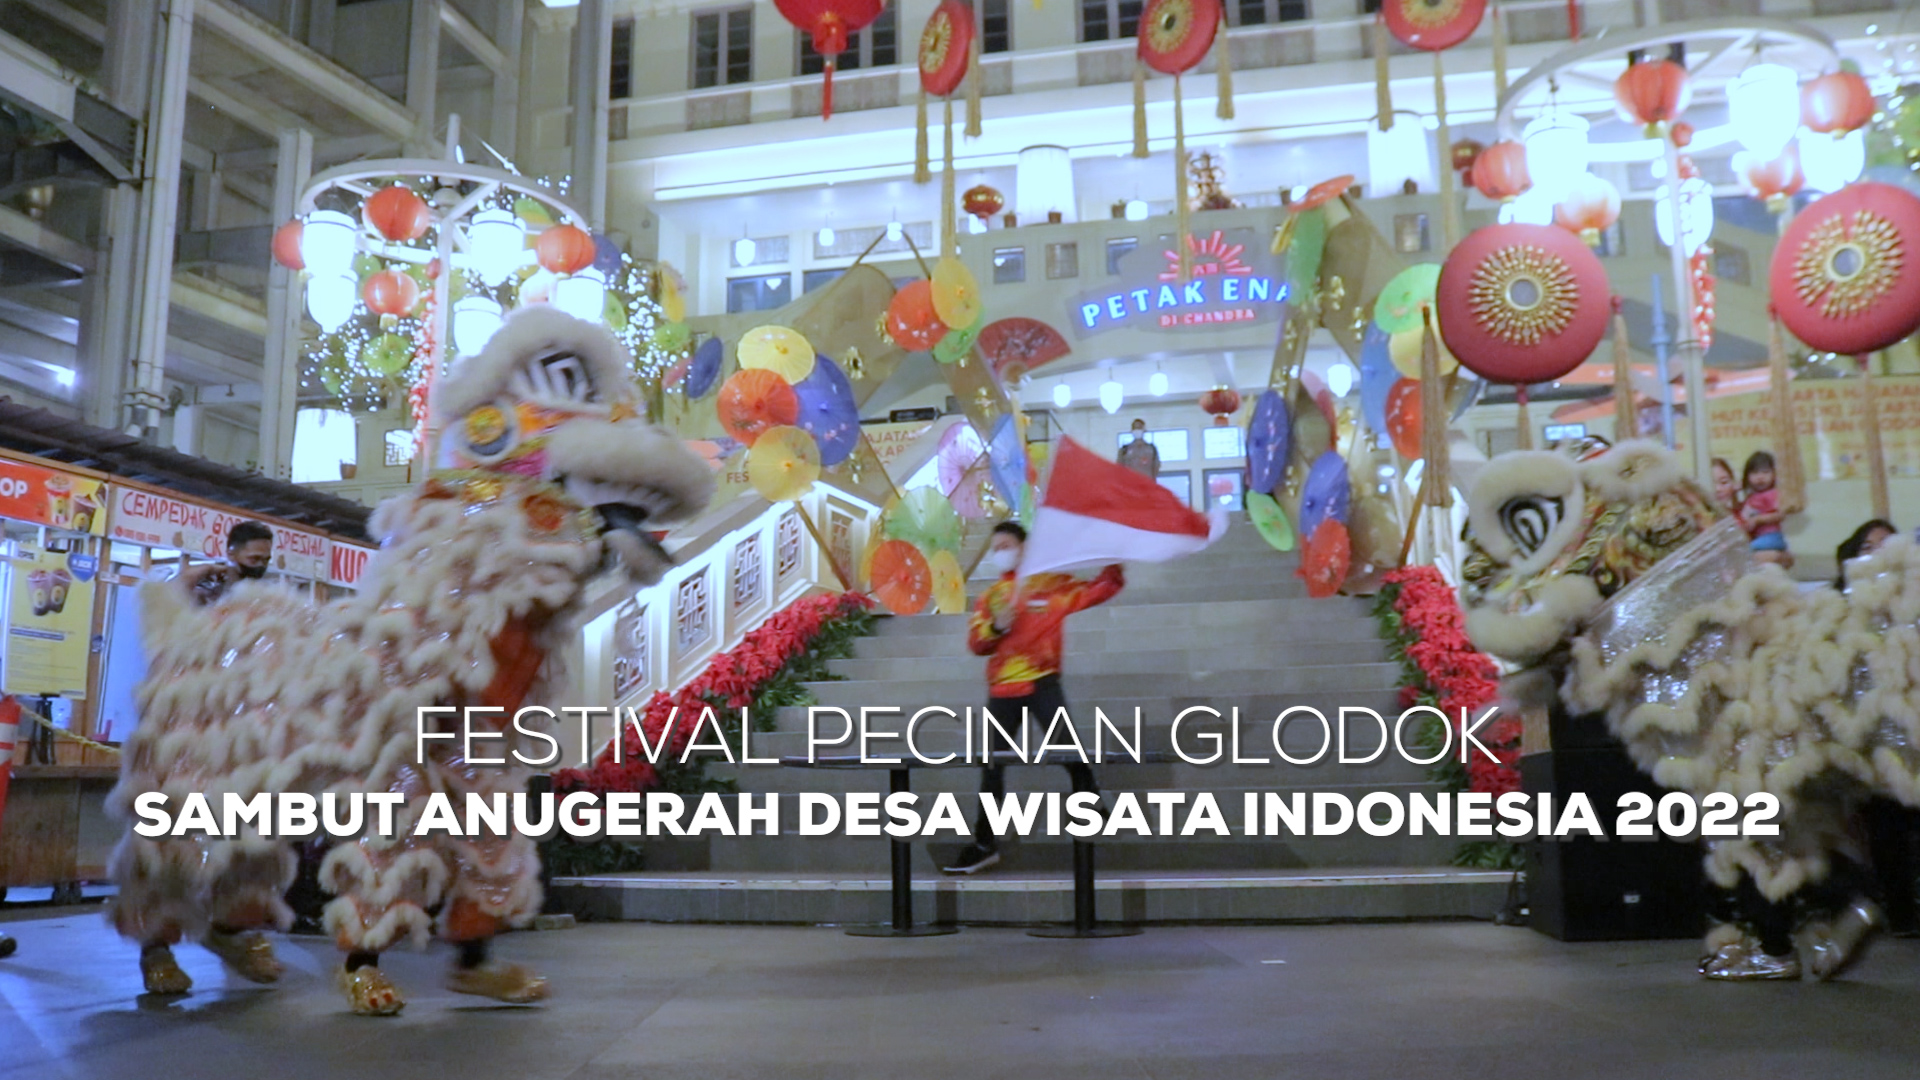 Sandiaga Uno membuka Festival Pecinan Glodok menyambut Anugerah Desa Wisata Indonesia 2022